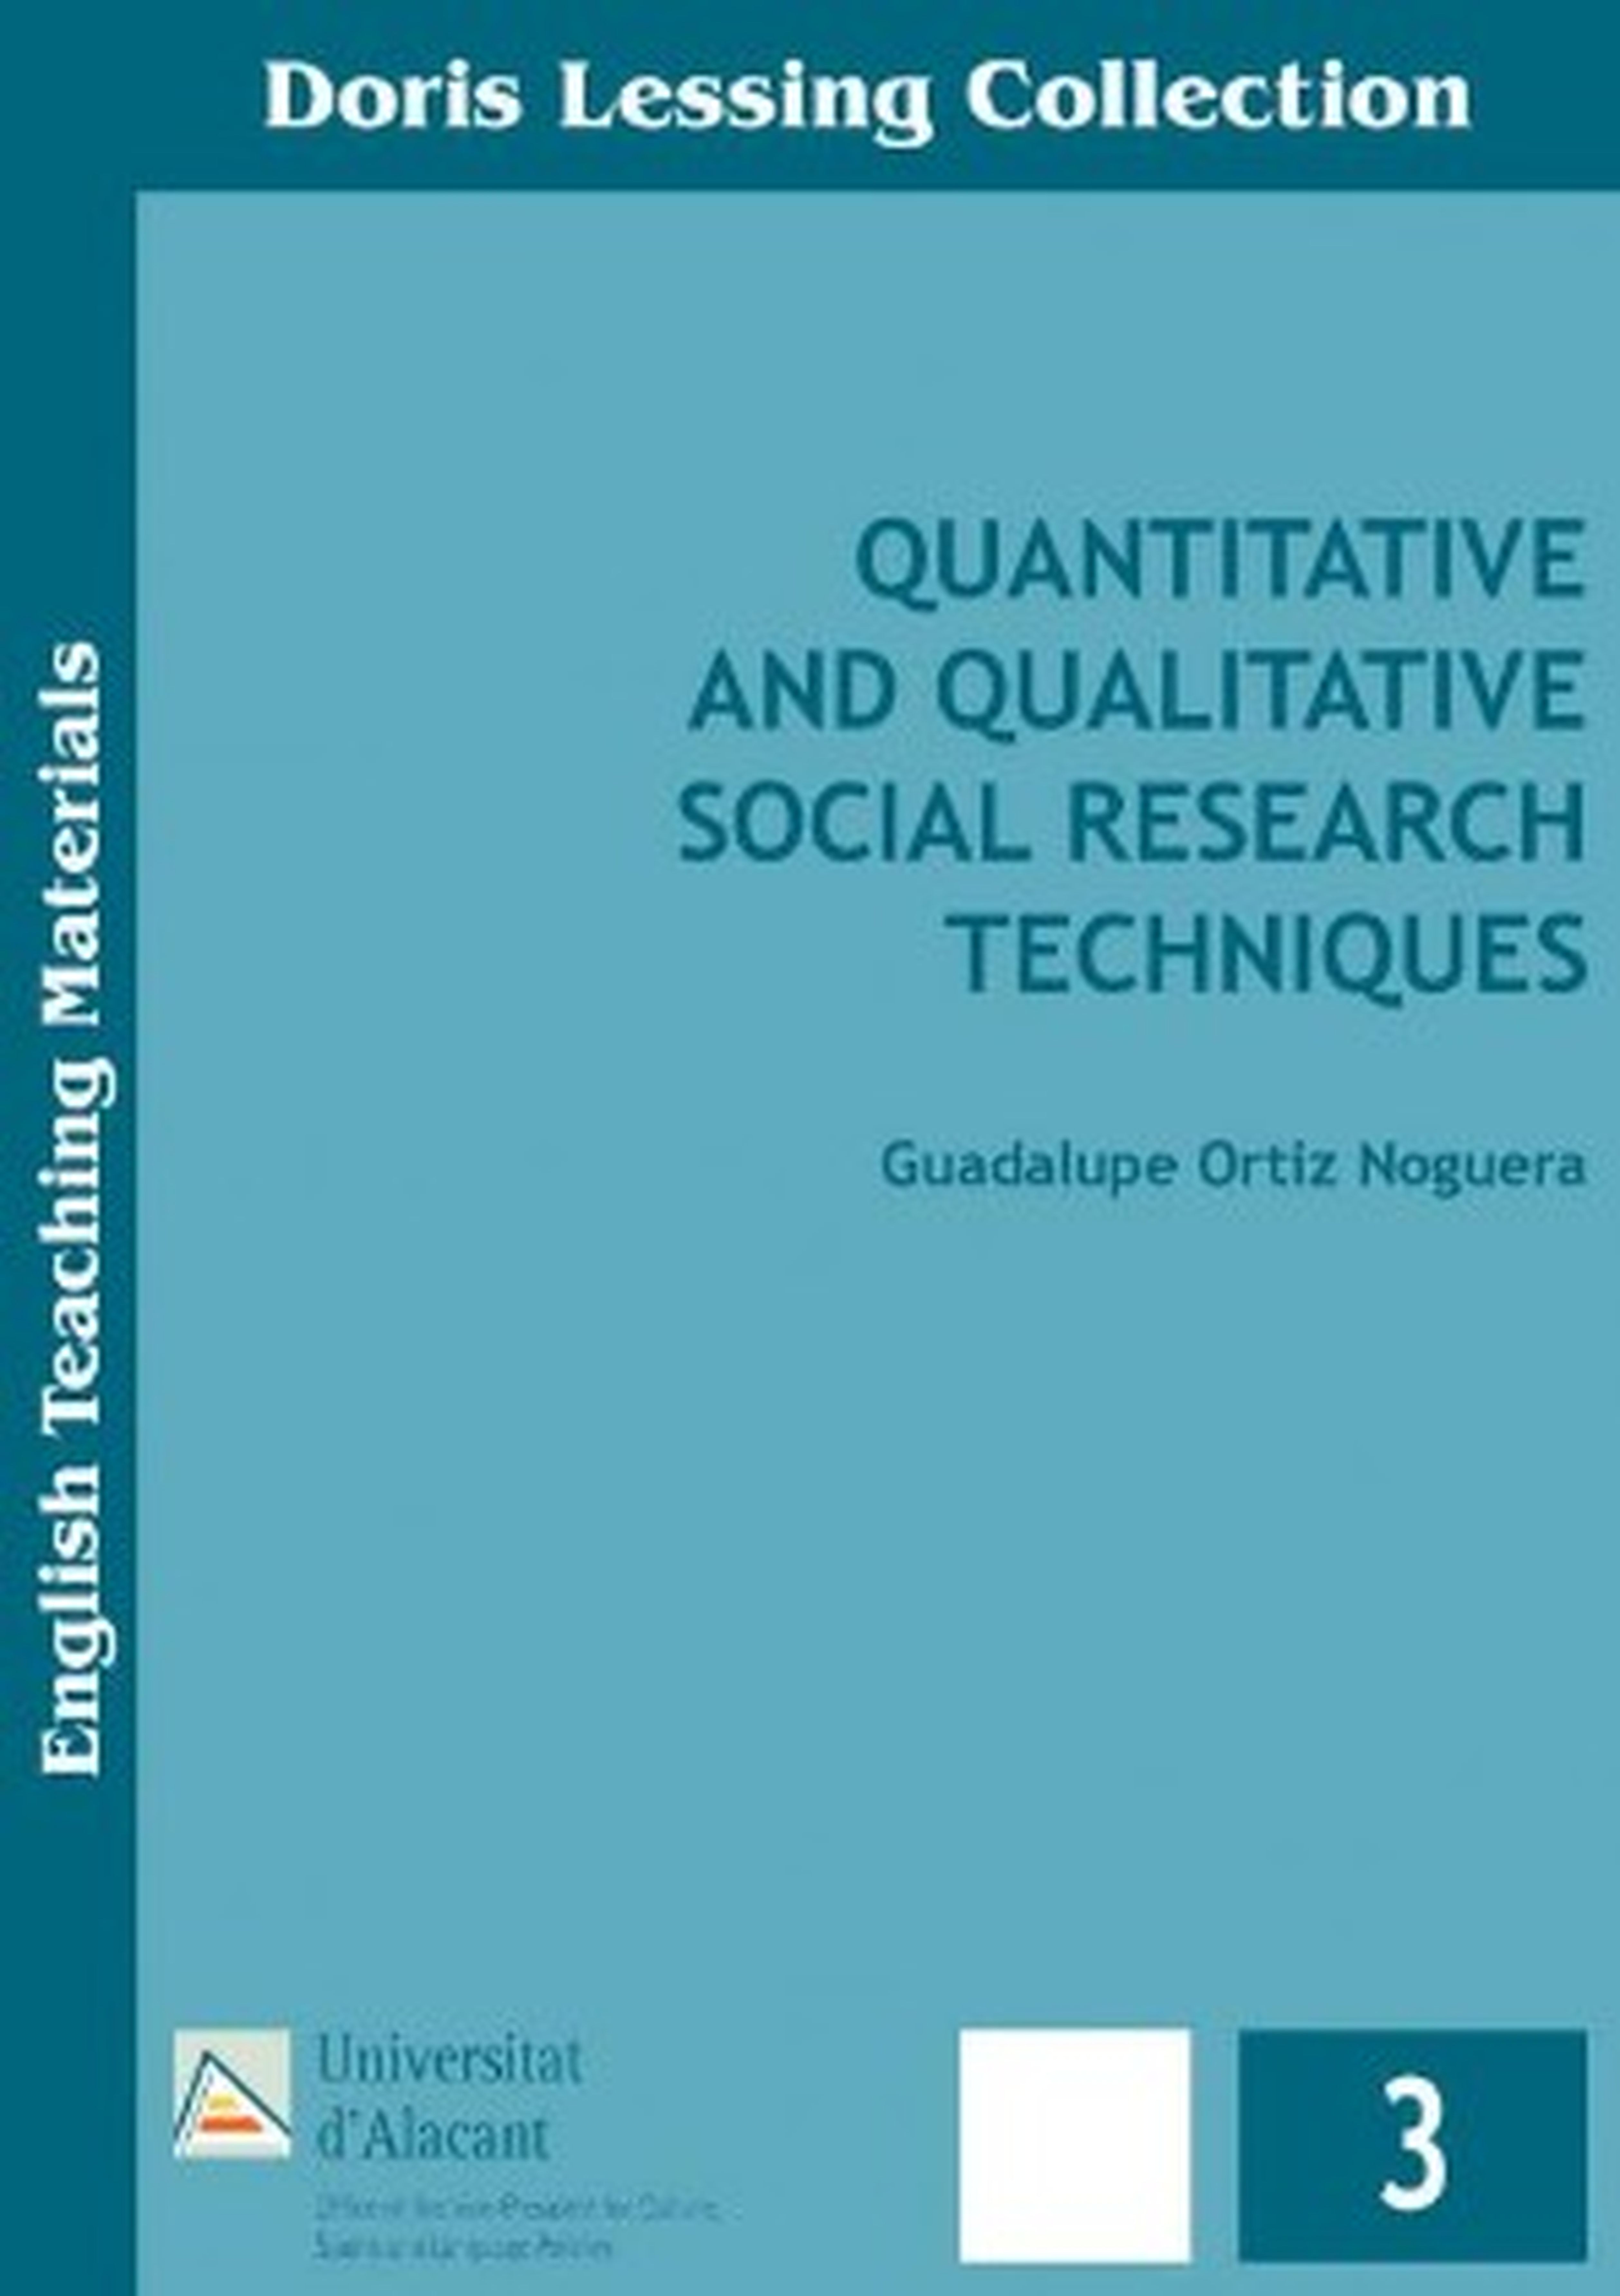 Quantitative and qualitative social researh techniques